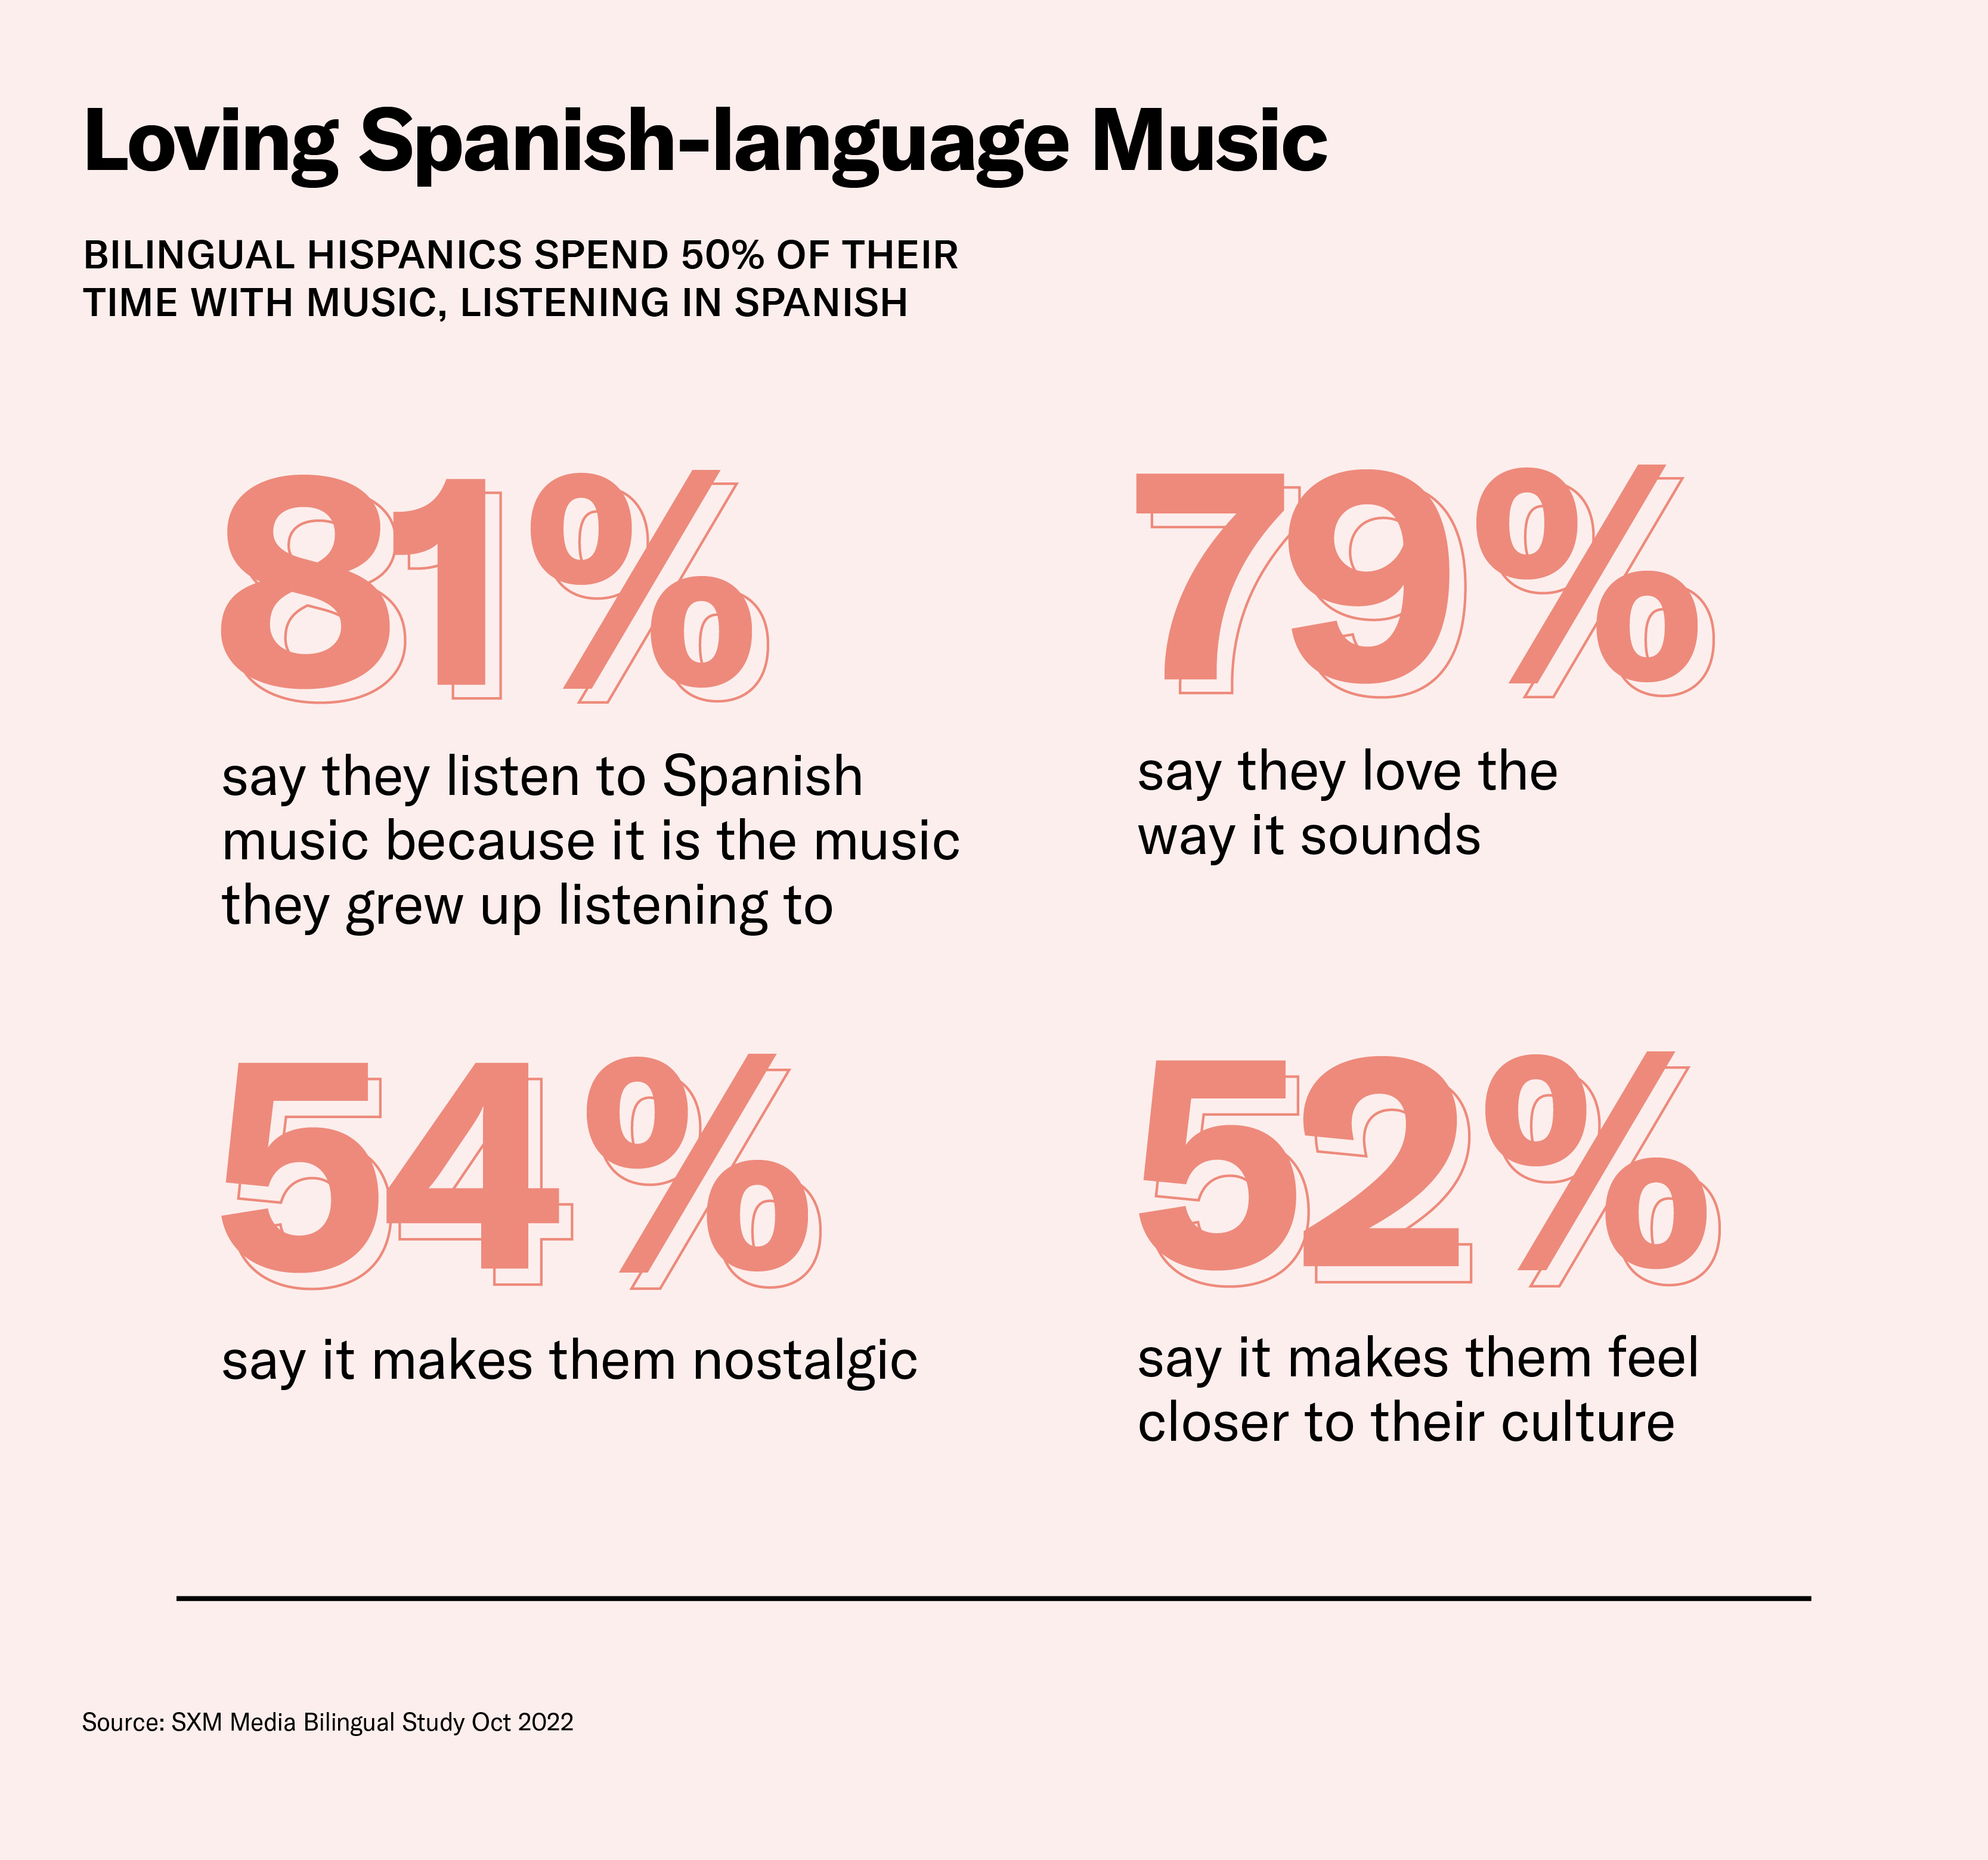 Bilingual Hispanics love Spanish-language music